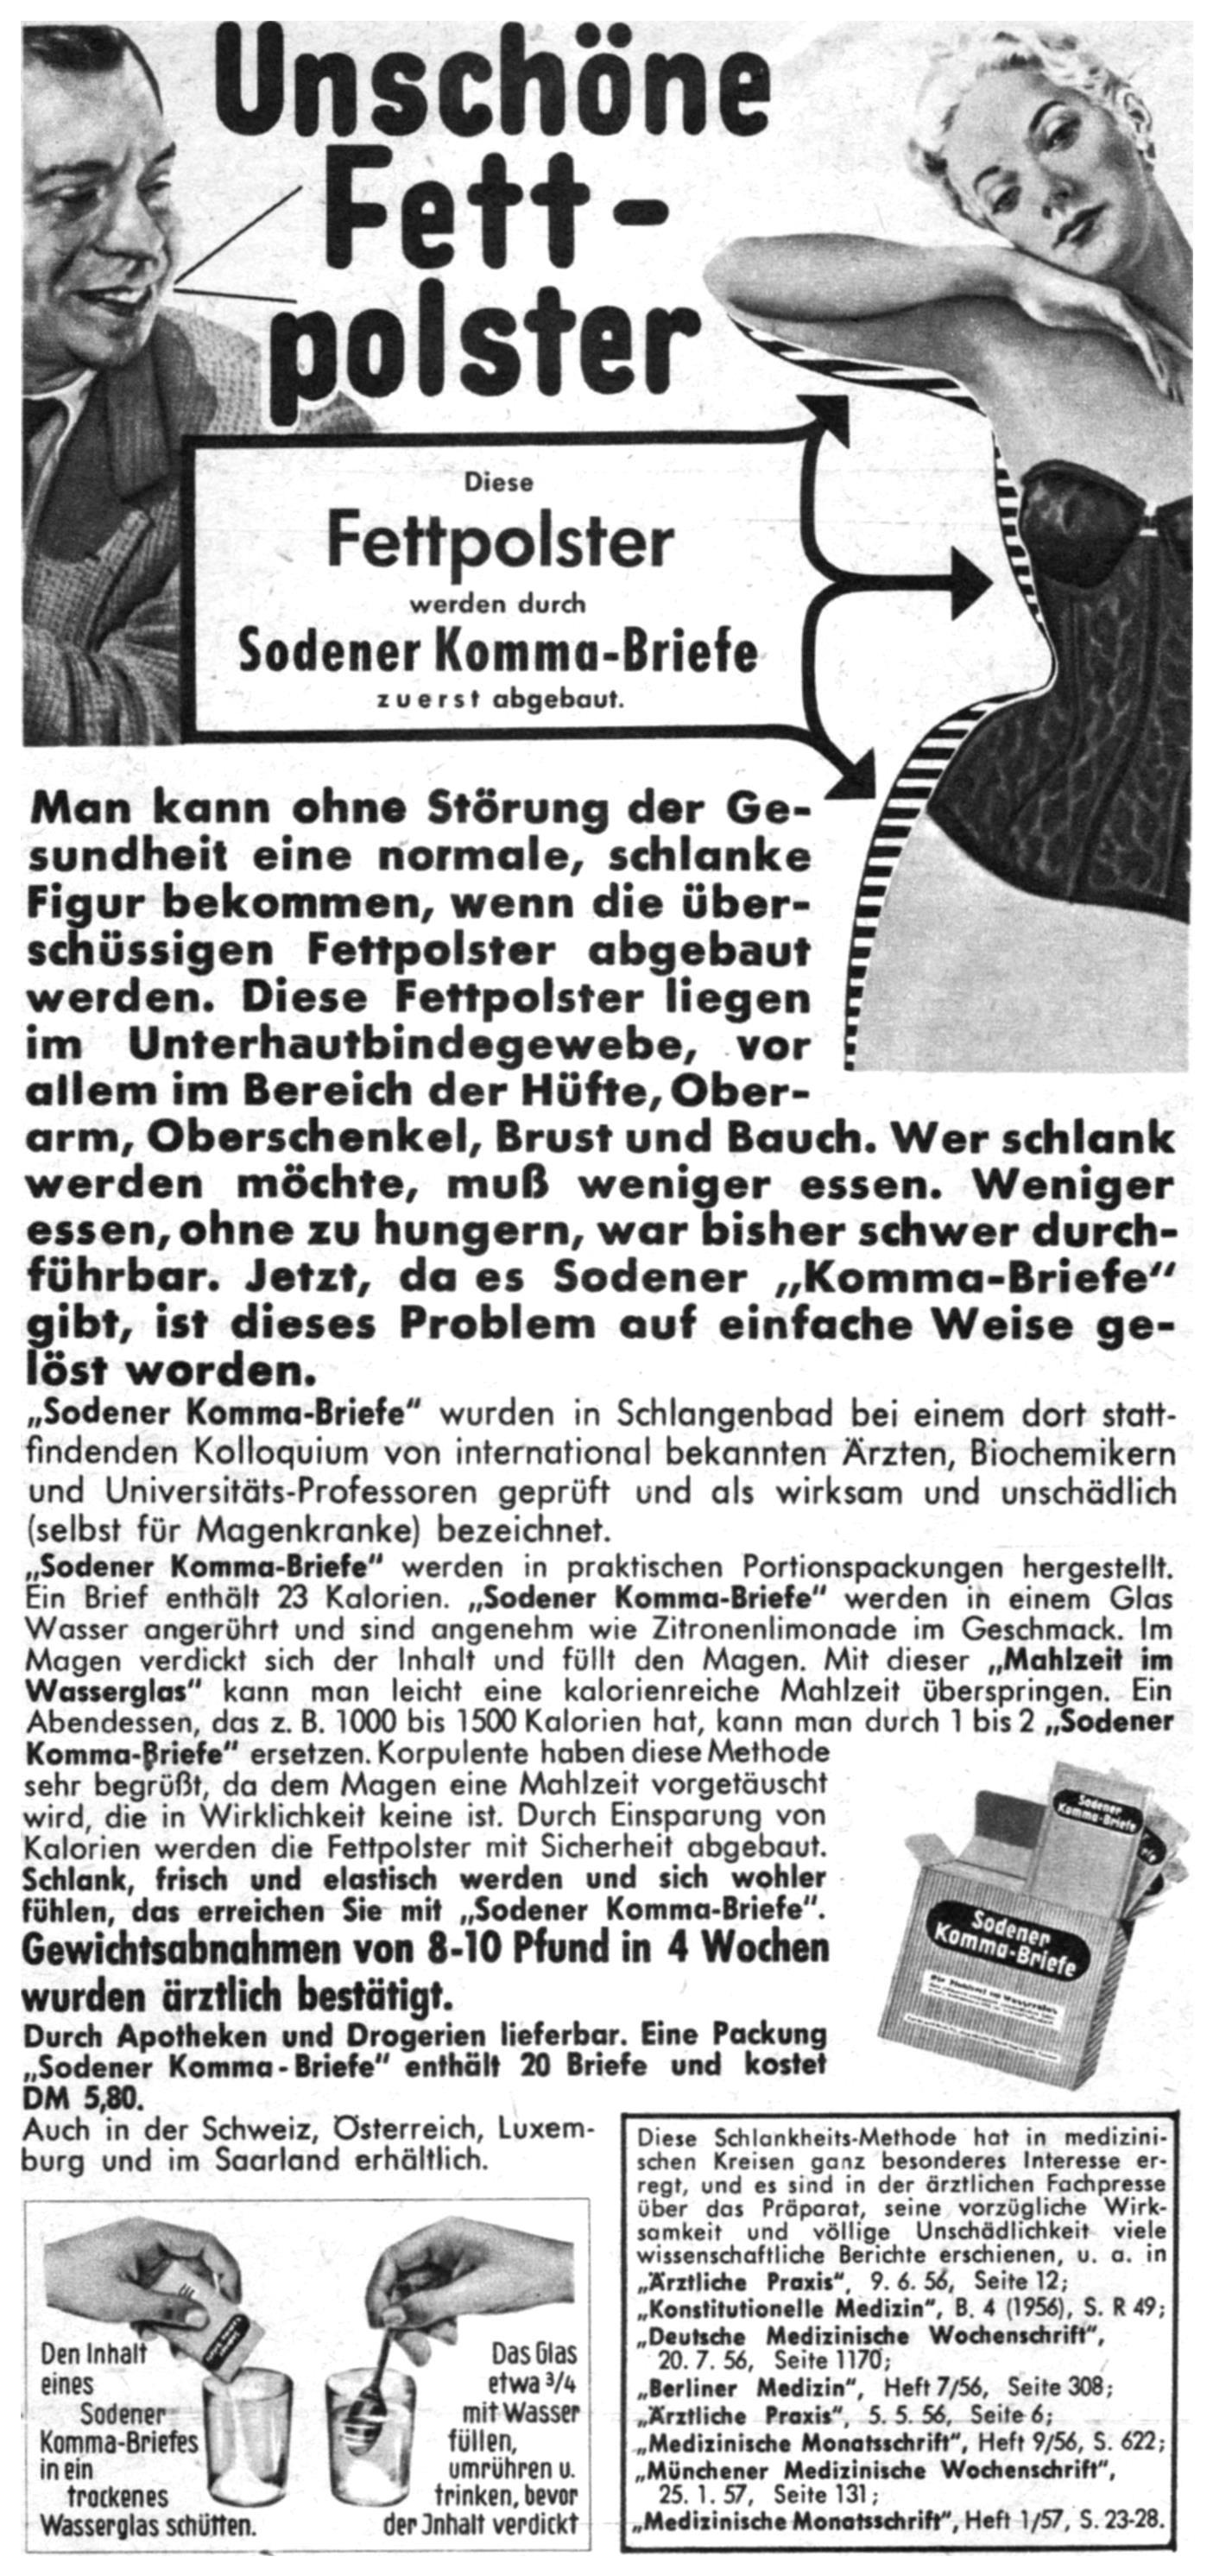 Sodener Komma-Briefe 1958 433.jpg